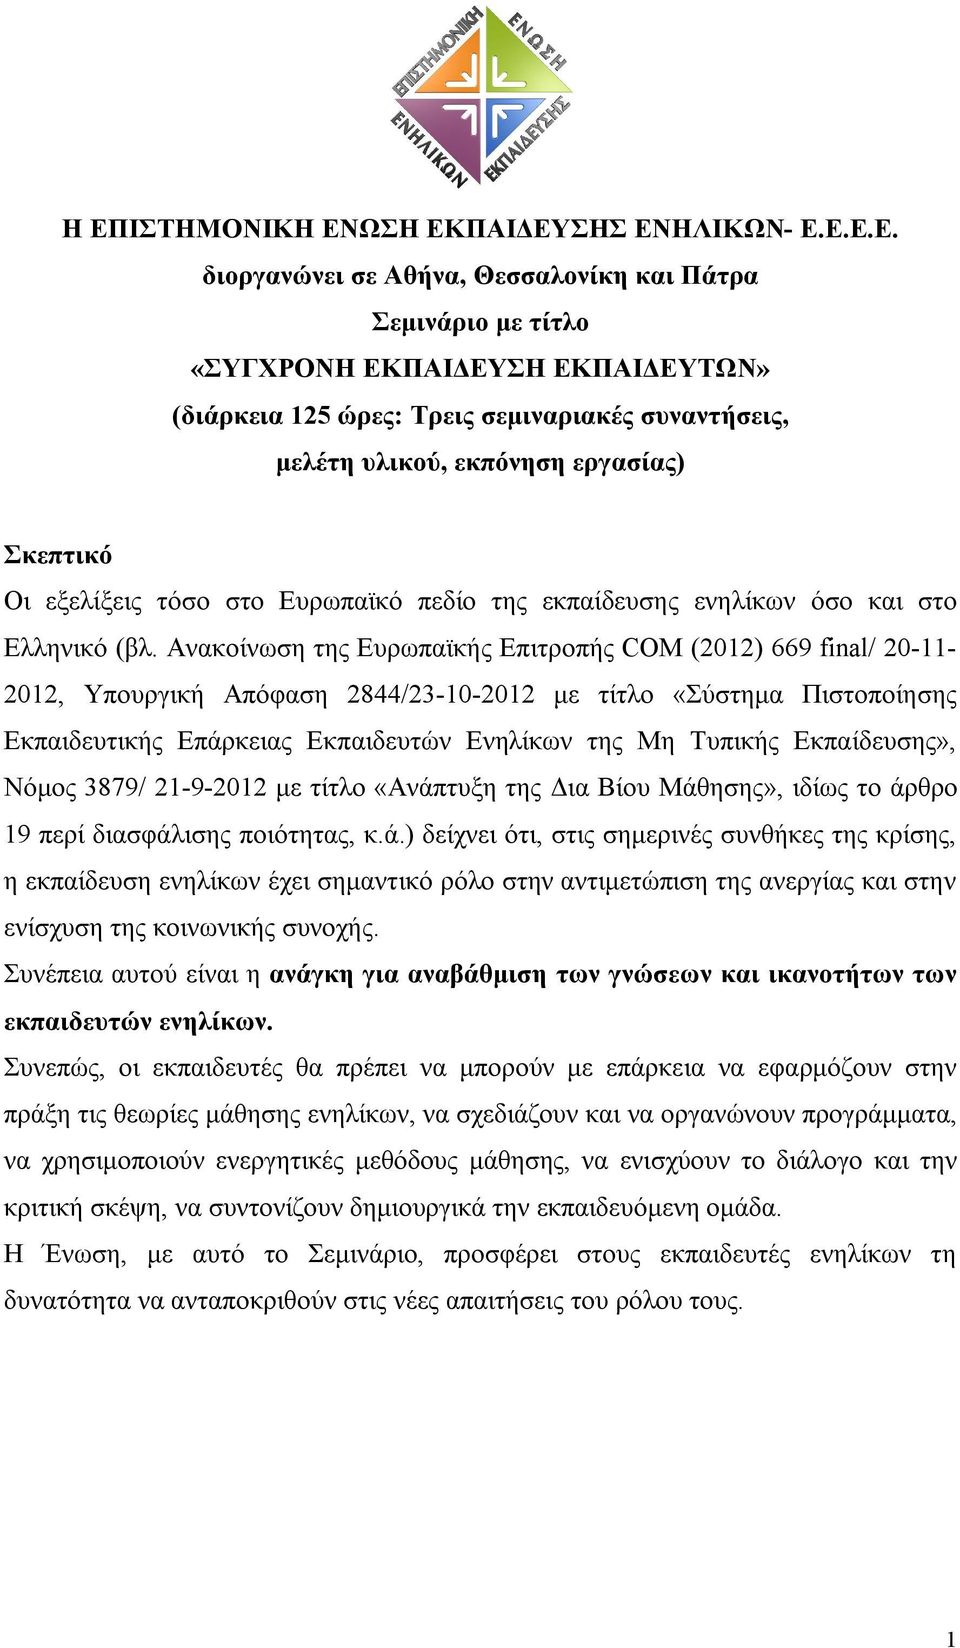 Ανακοίνωση της Ευρωπαϊκής Επιτροπής COM (2012) 669 final/ 20-11- 2012, Υπουργική Απόφαση 2844/23-10-2012 με τίτλο «Σύστημα Πιστοποίησης Εκπαιδευτικής Επάρκειας Εκπαιδευτών Ενηλίκων της Μη Τυπικής